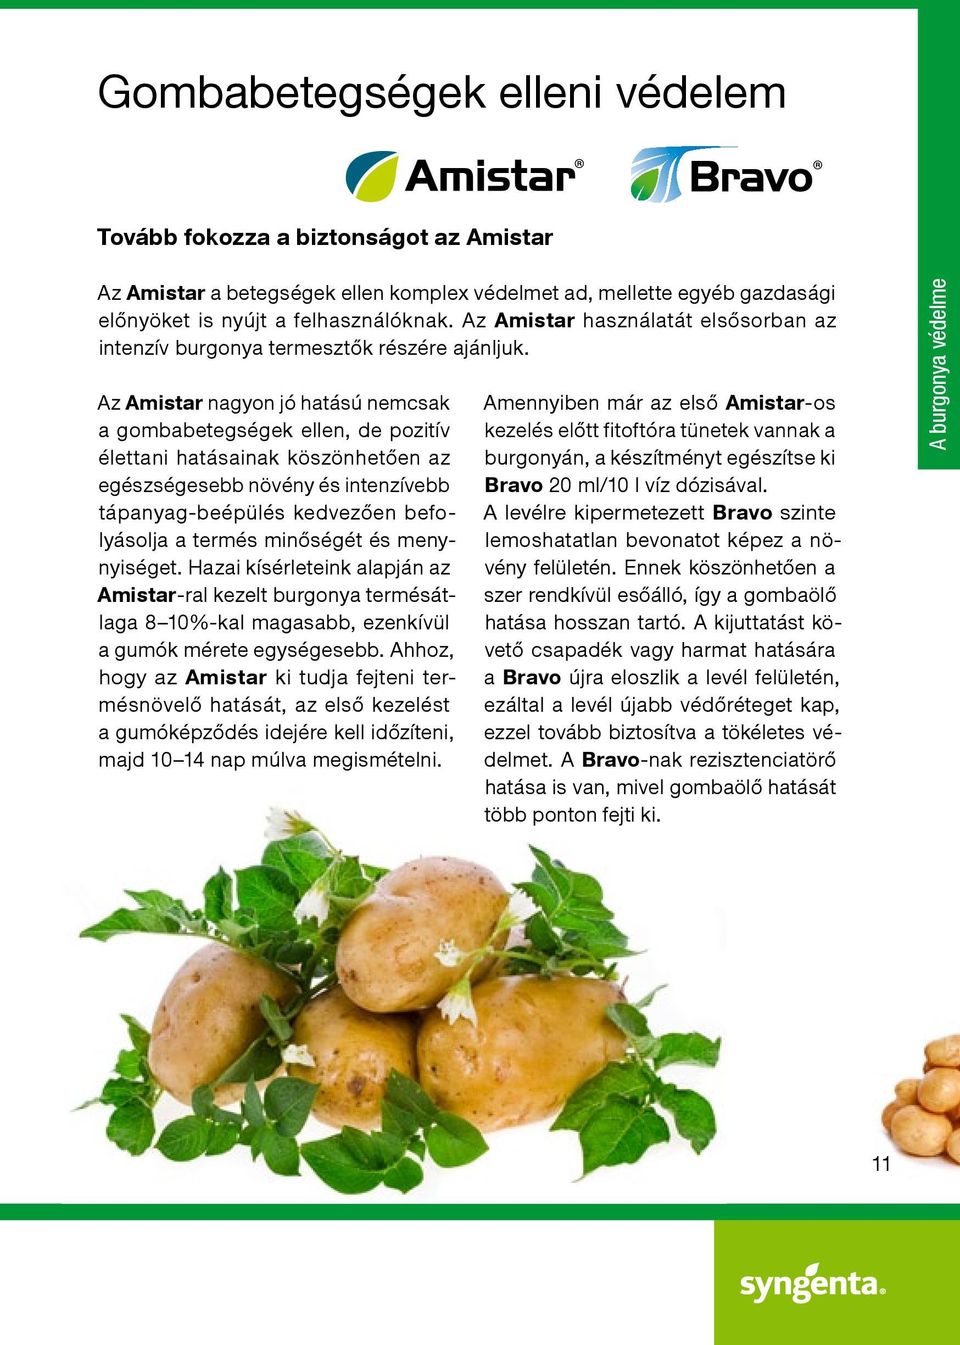 Az Amistar nagyon jó hatású nemcsak a gombabetegségek ellen, de pozitív élettani hatásainak köszönhetően az egészségesebb növény és intenzívebb tápanyag-beépülés kedvezően befolyásolja a termés